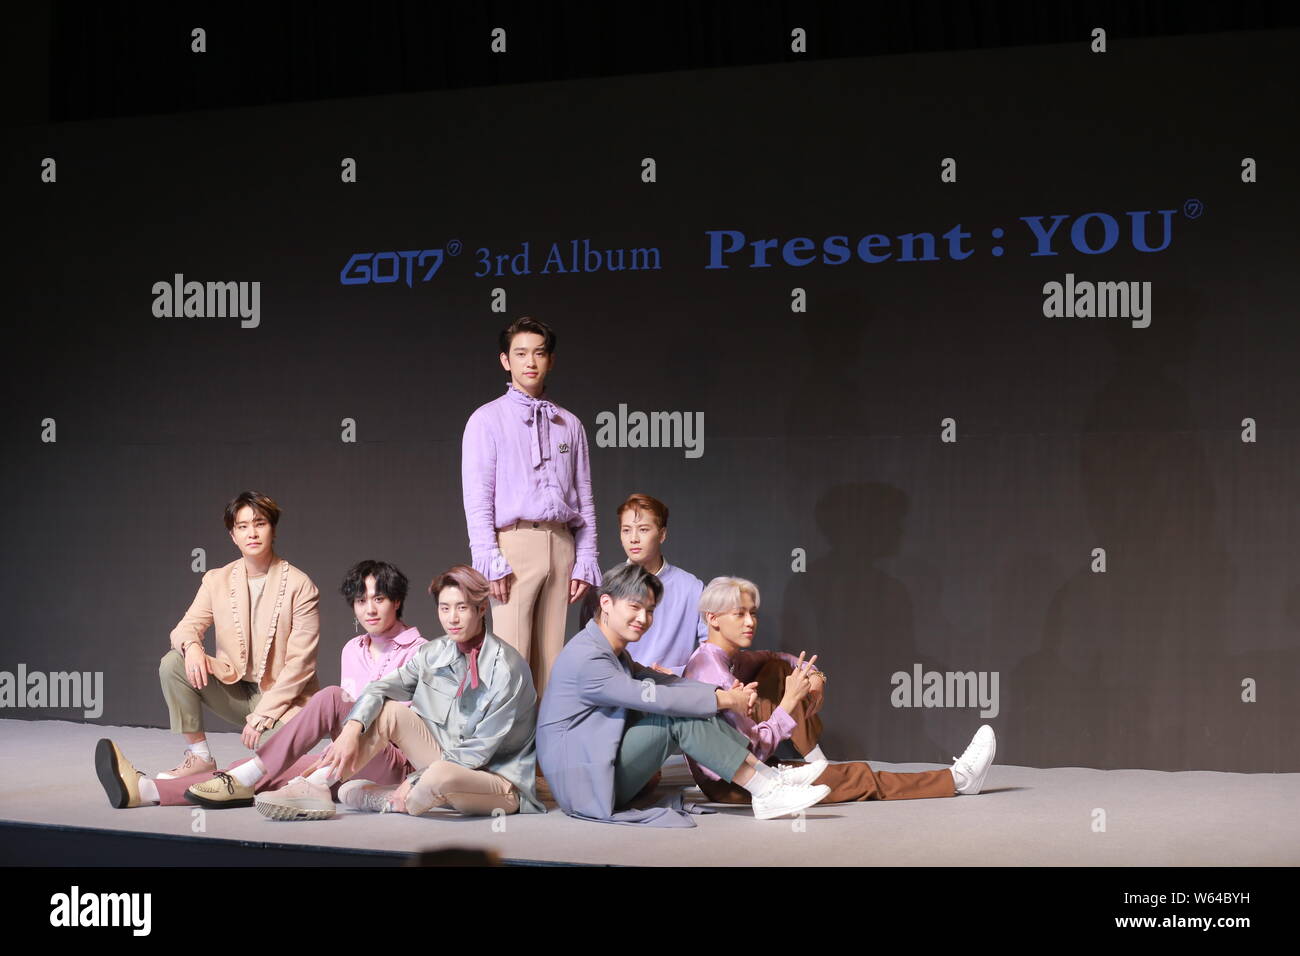 Membri del sud coreano di boy band Got7 frequentare una vetrina per rilasciare il terzo album in studio " presente: Si' a Seul, Corea del Sud, 17 settembre 2018. Foto Stock